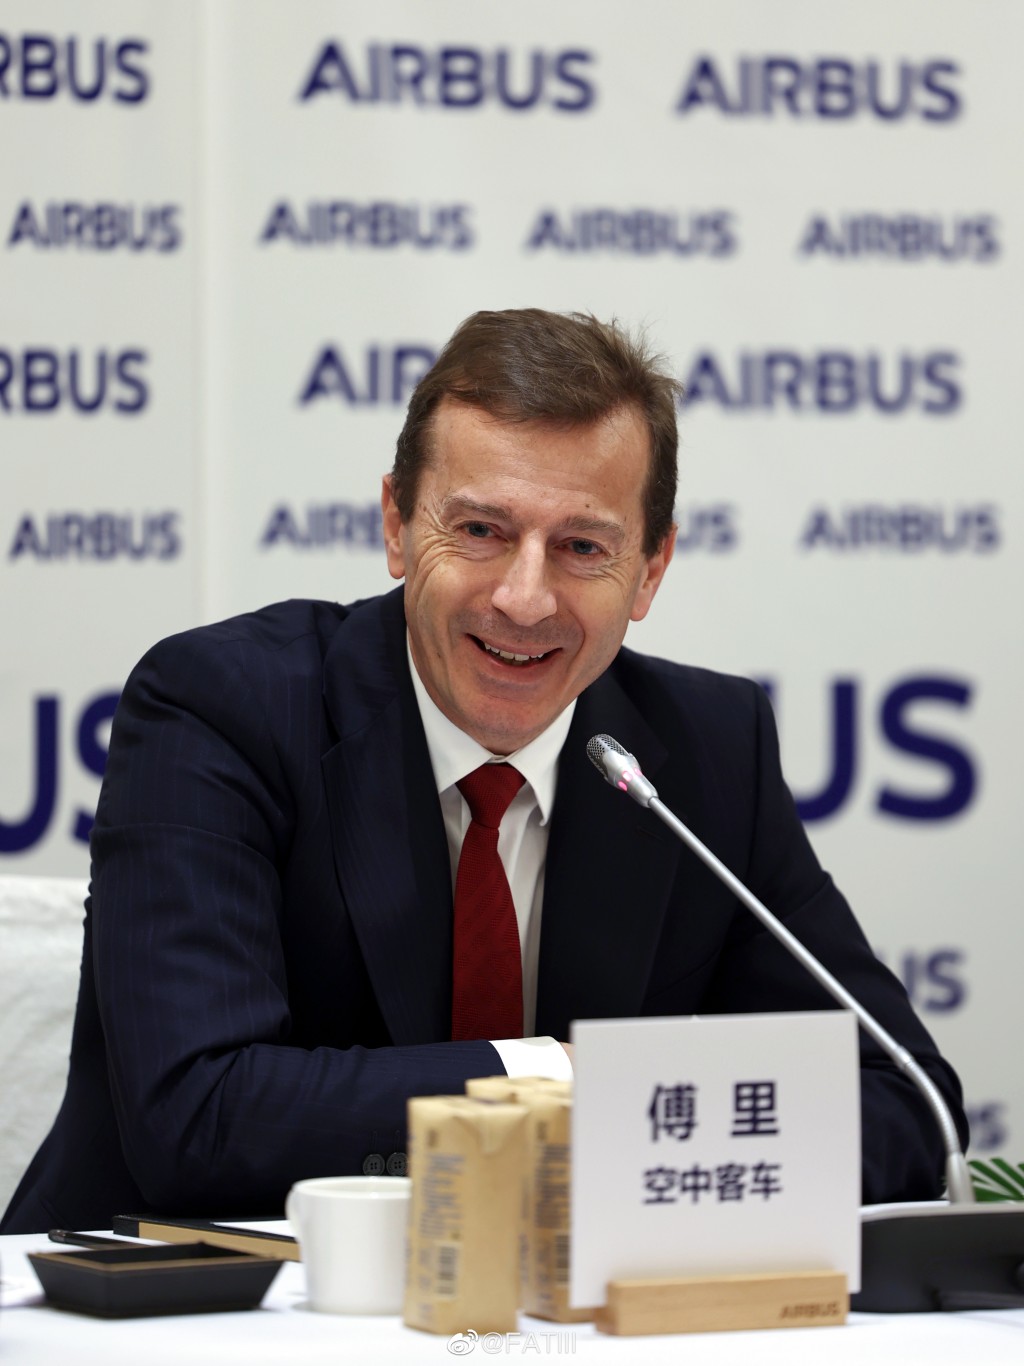 空中客车（空中巴士公司，Airbus）行政总裁傅里。 微博/FATIII